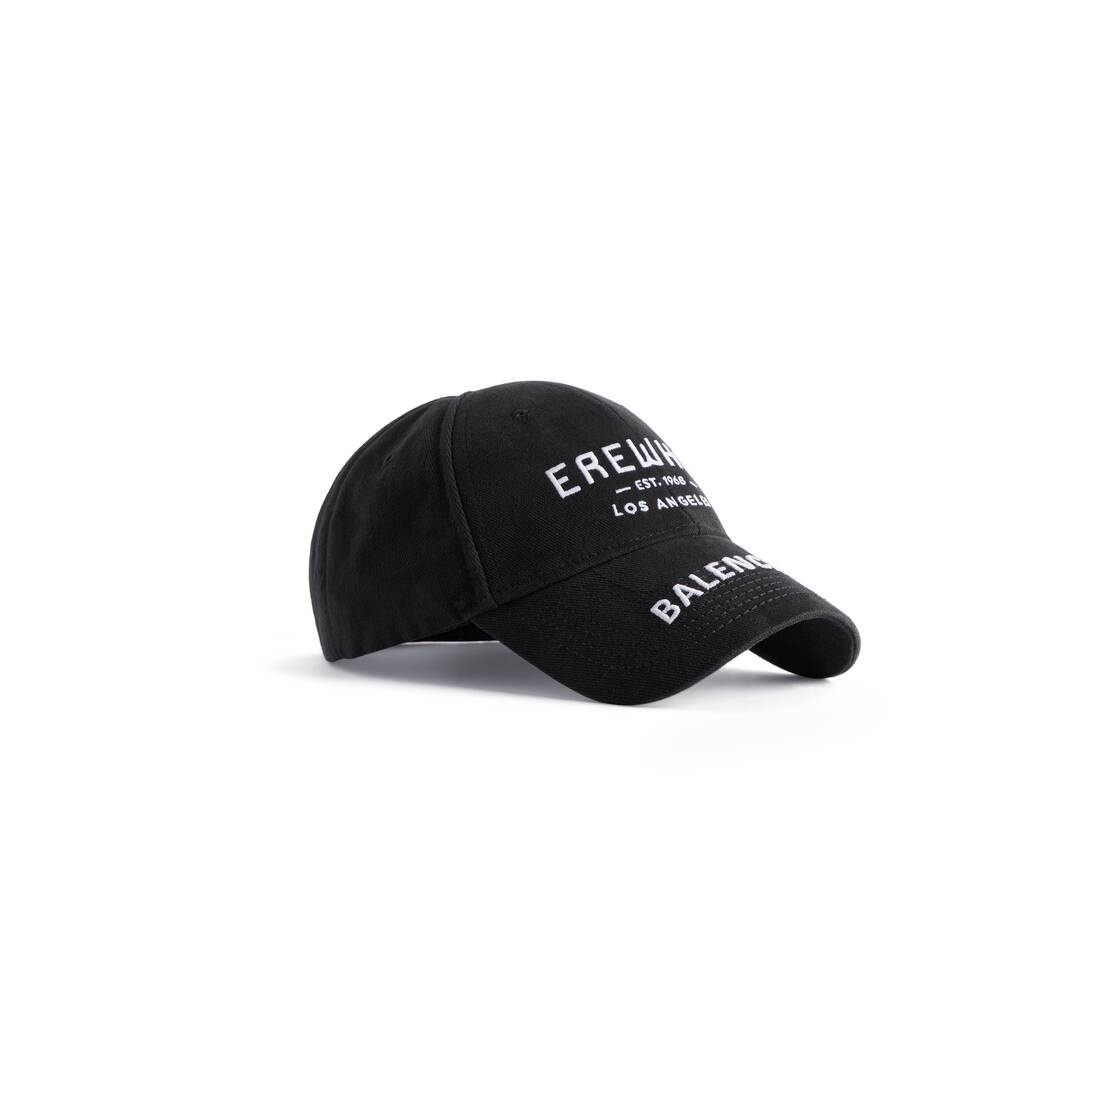 Erewhon® Los Angeles Cap in Black/white - 2